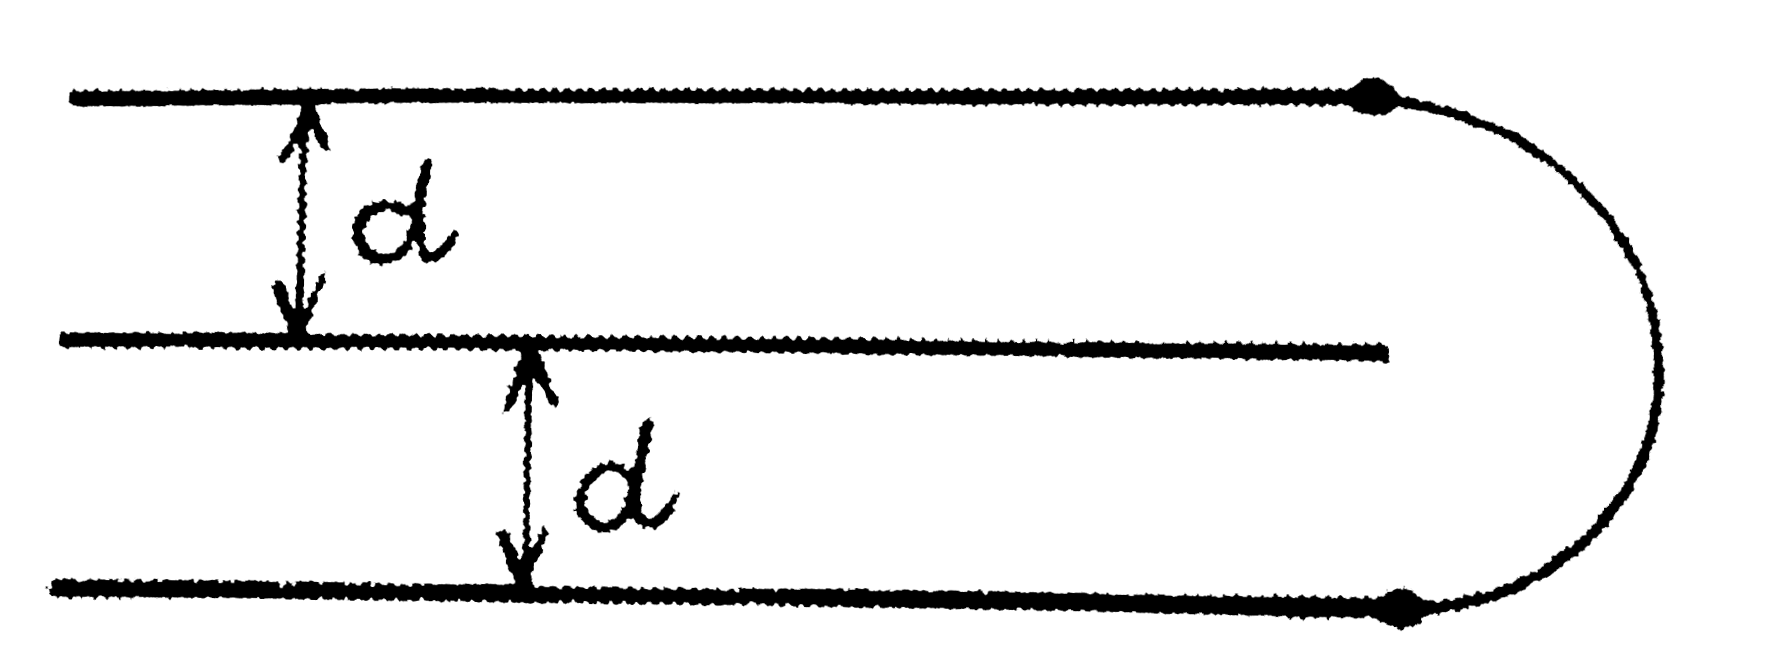 संलग्न चित्र में प्रदर्शित तीन प्लेटो की धारिता ज्ञात कीजिए। प्रत्येक प्लेट का क्षेत्रफल A